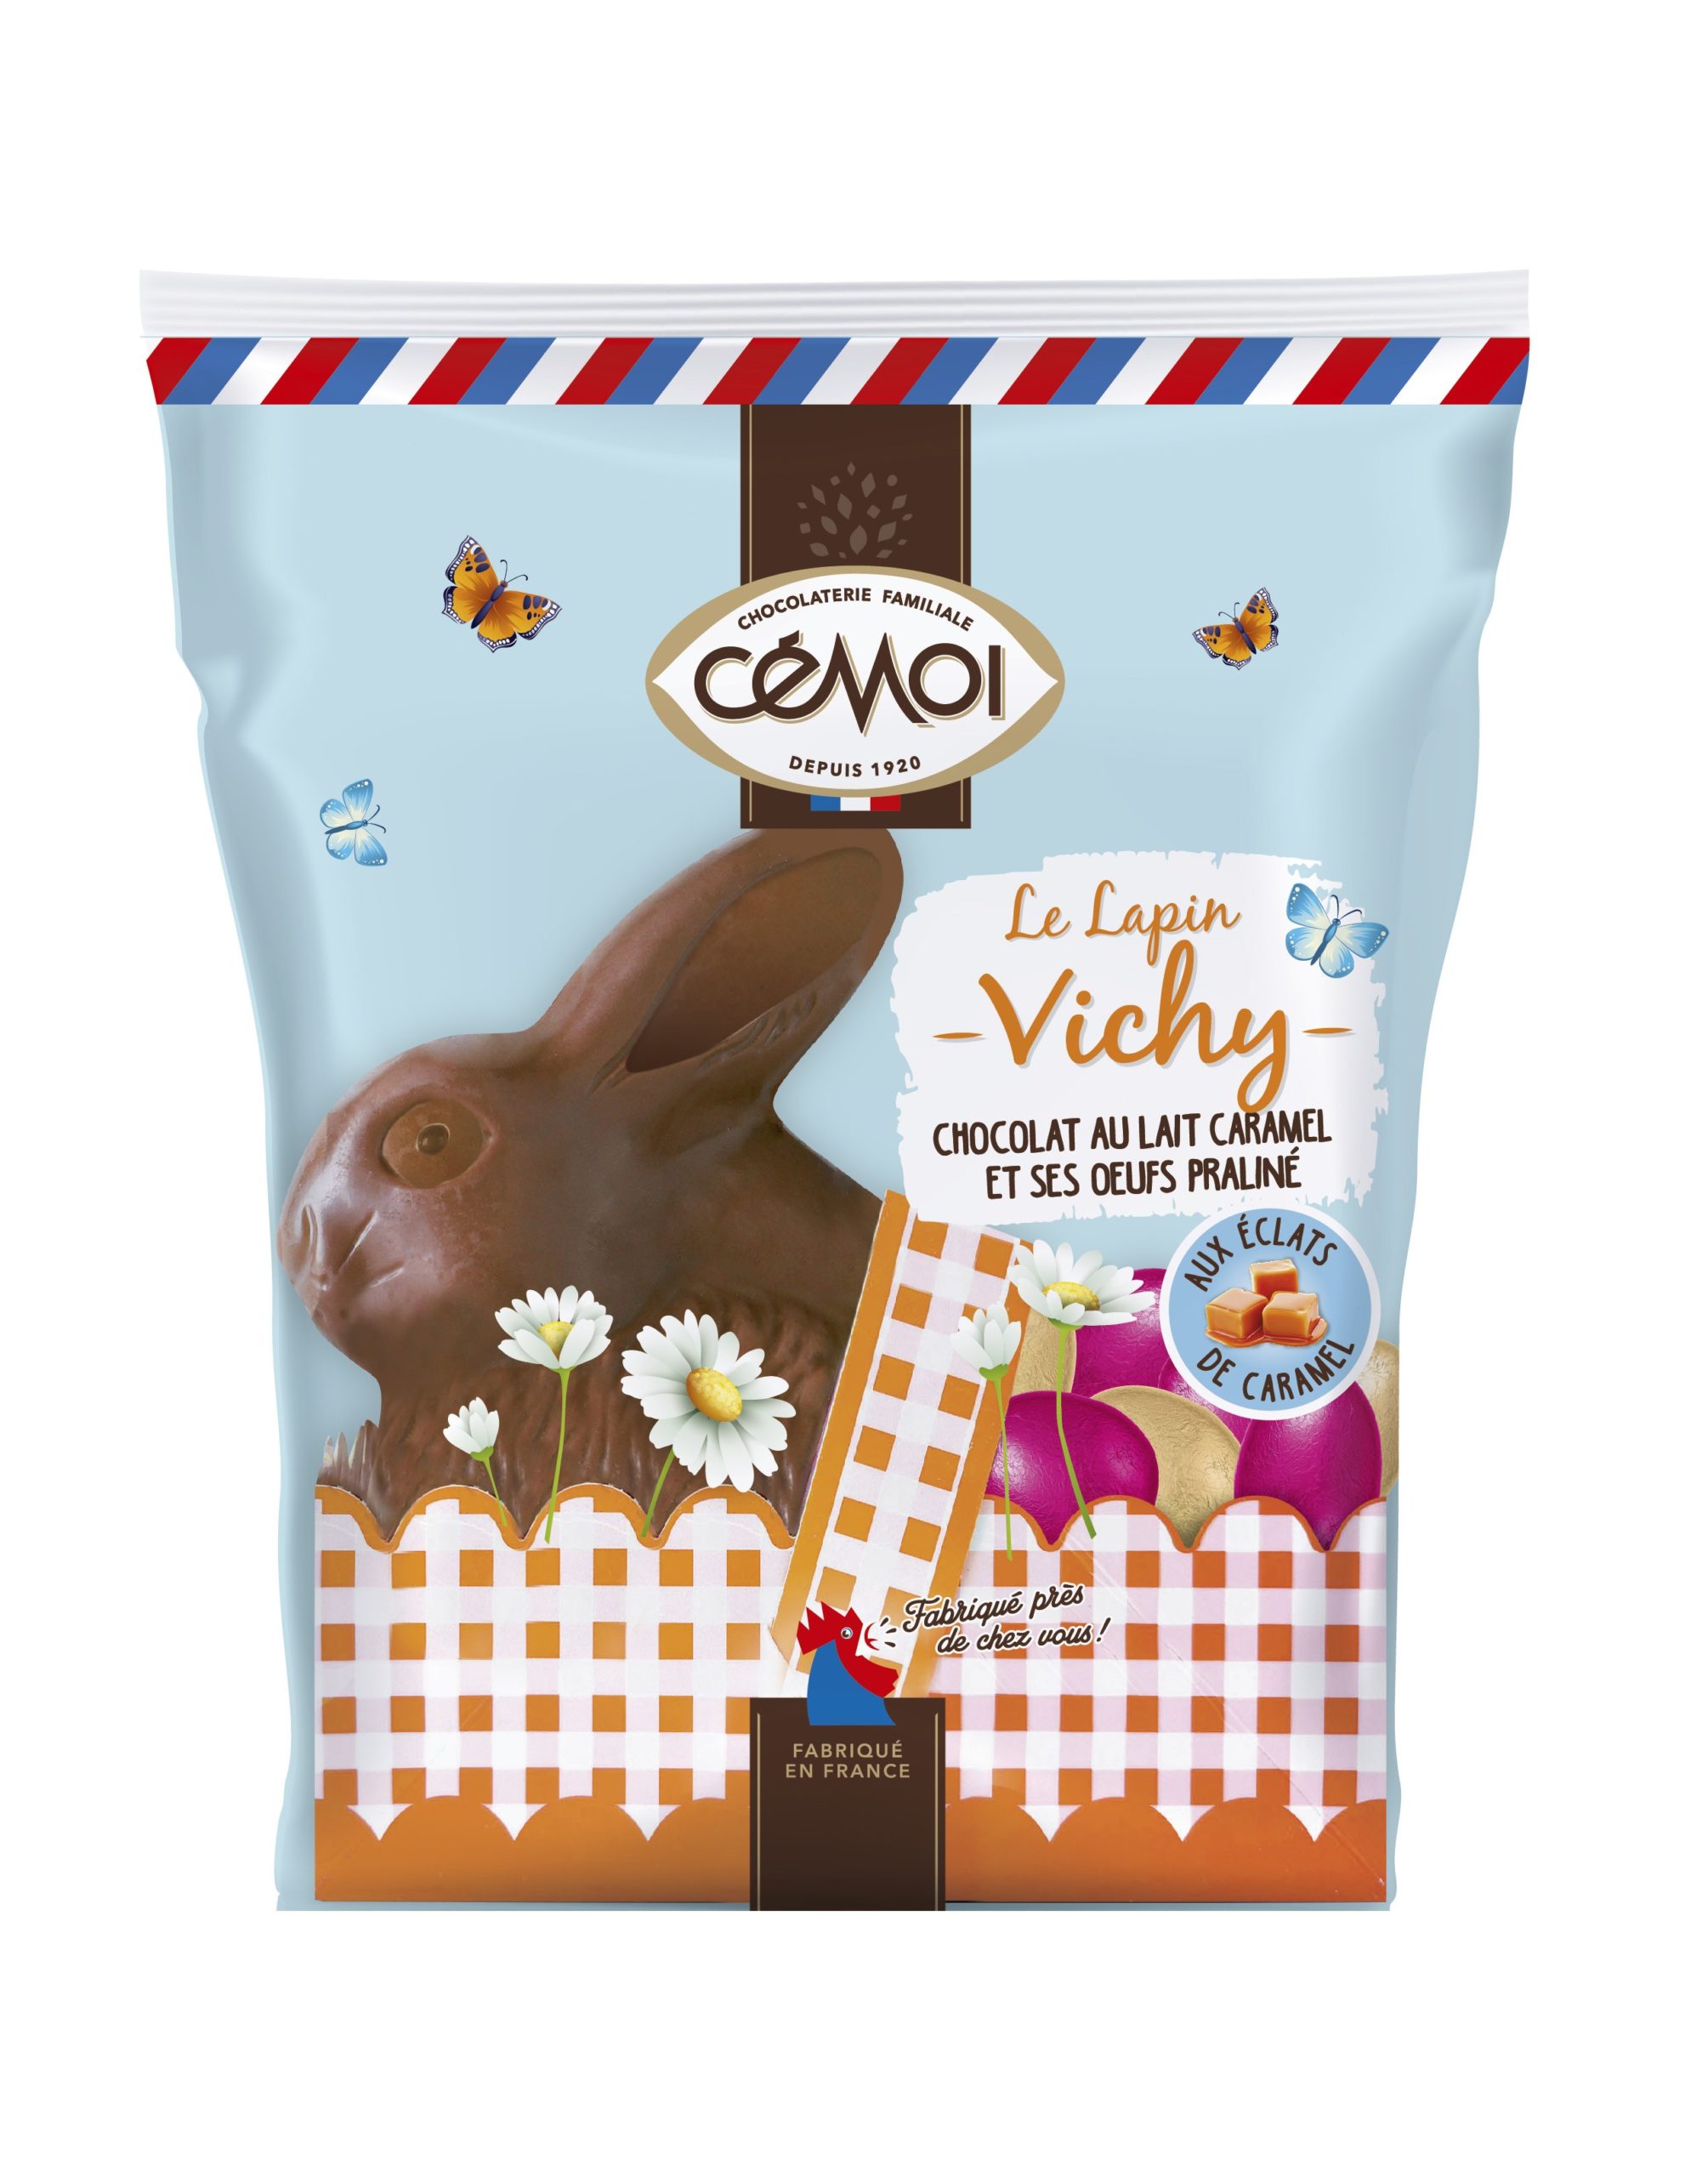 Le lapin Vichy au chocolat au lait et éclats de caramel, et ses oeufs praliné, 159g